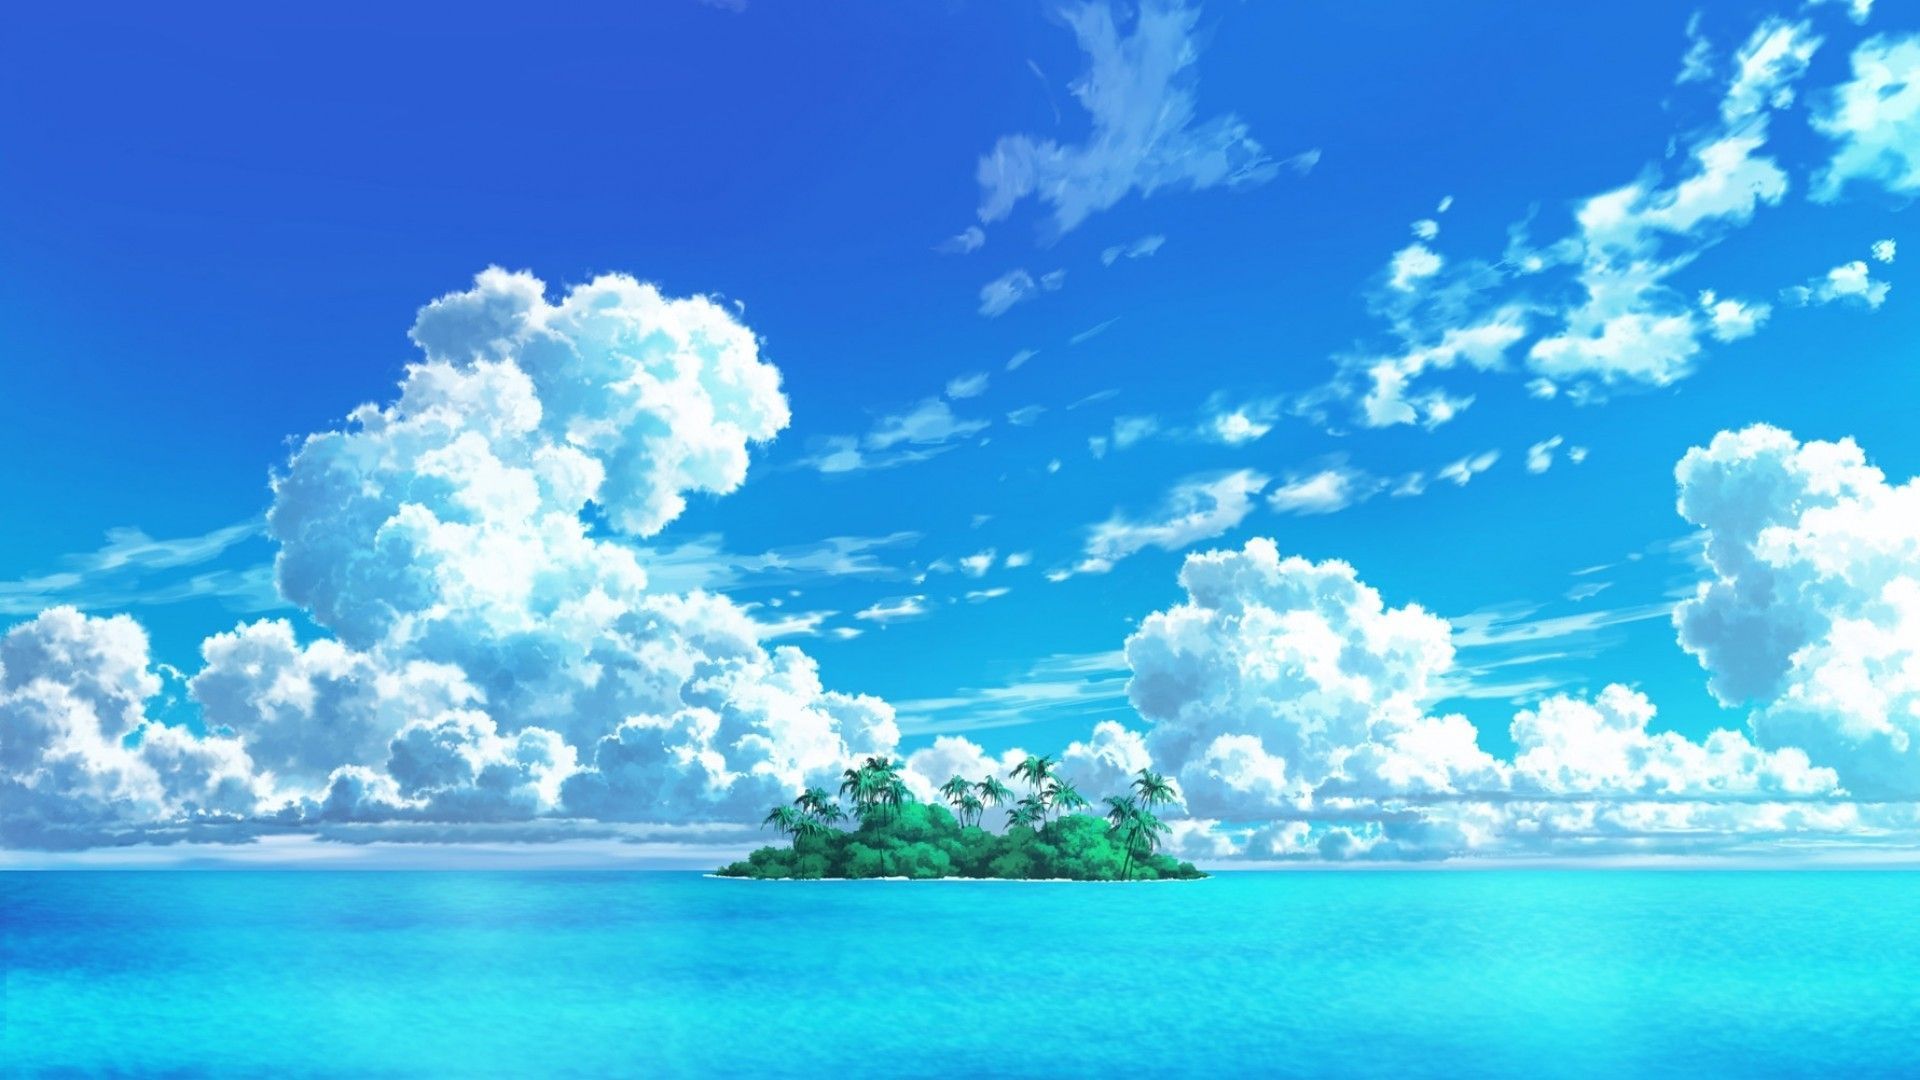 Anime Ocean Wallpaper Free Anime Ocean Background